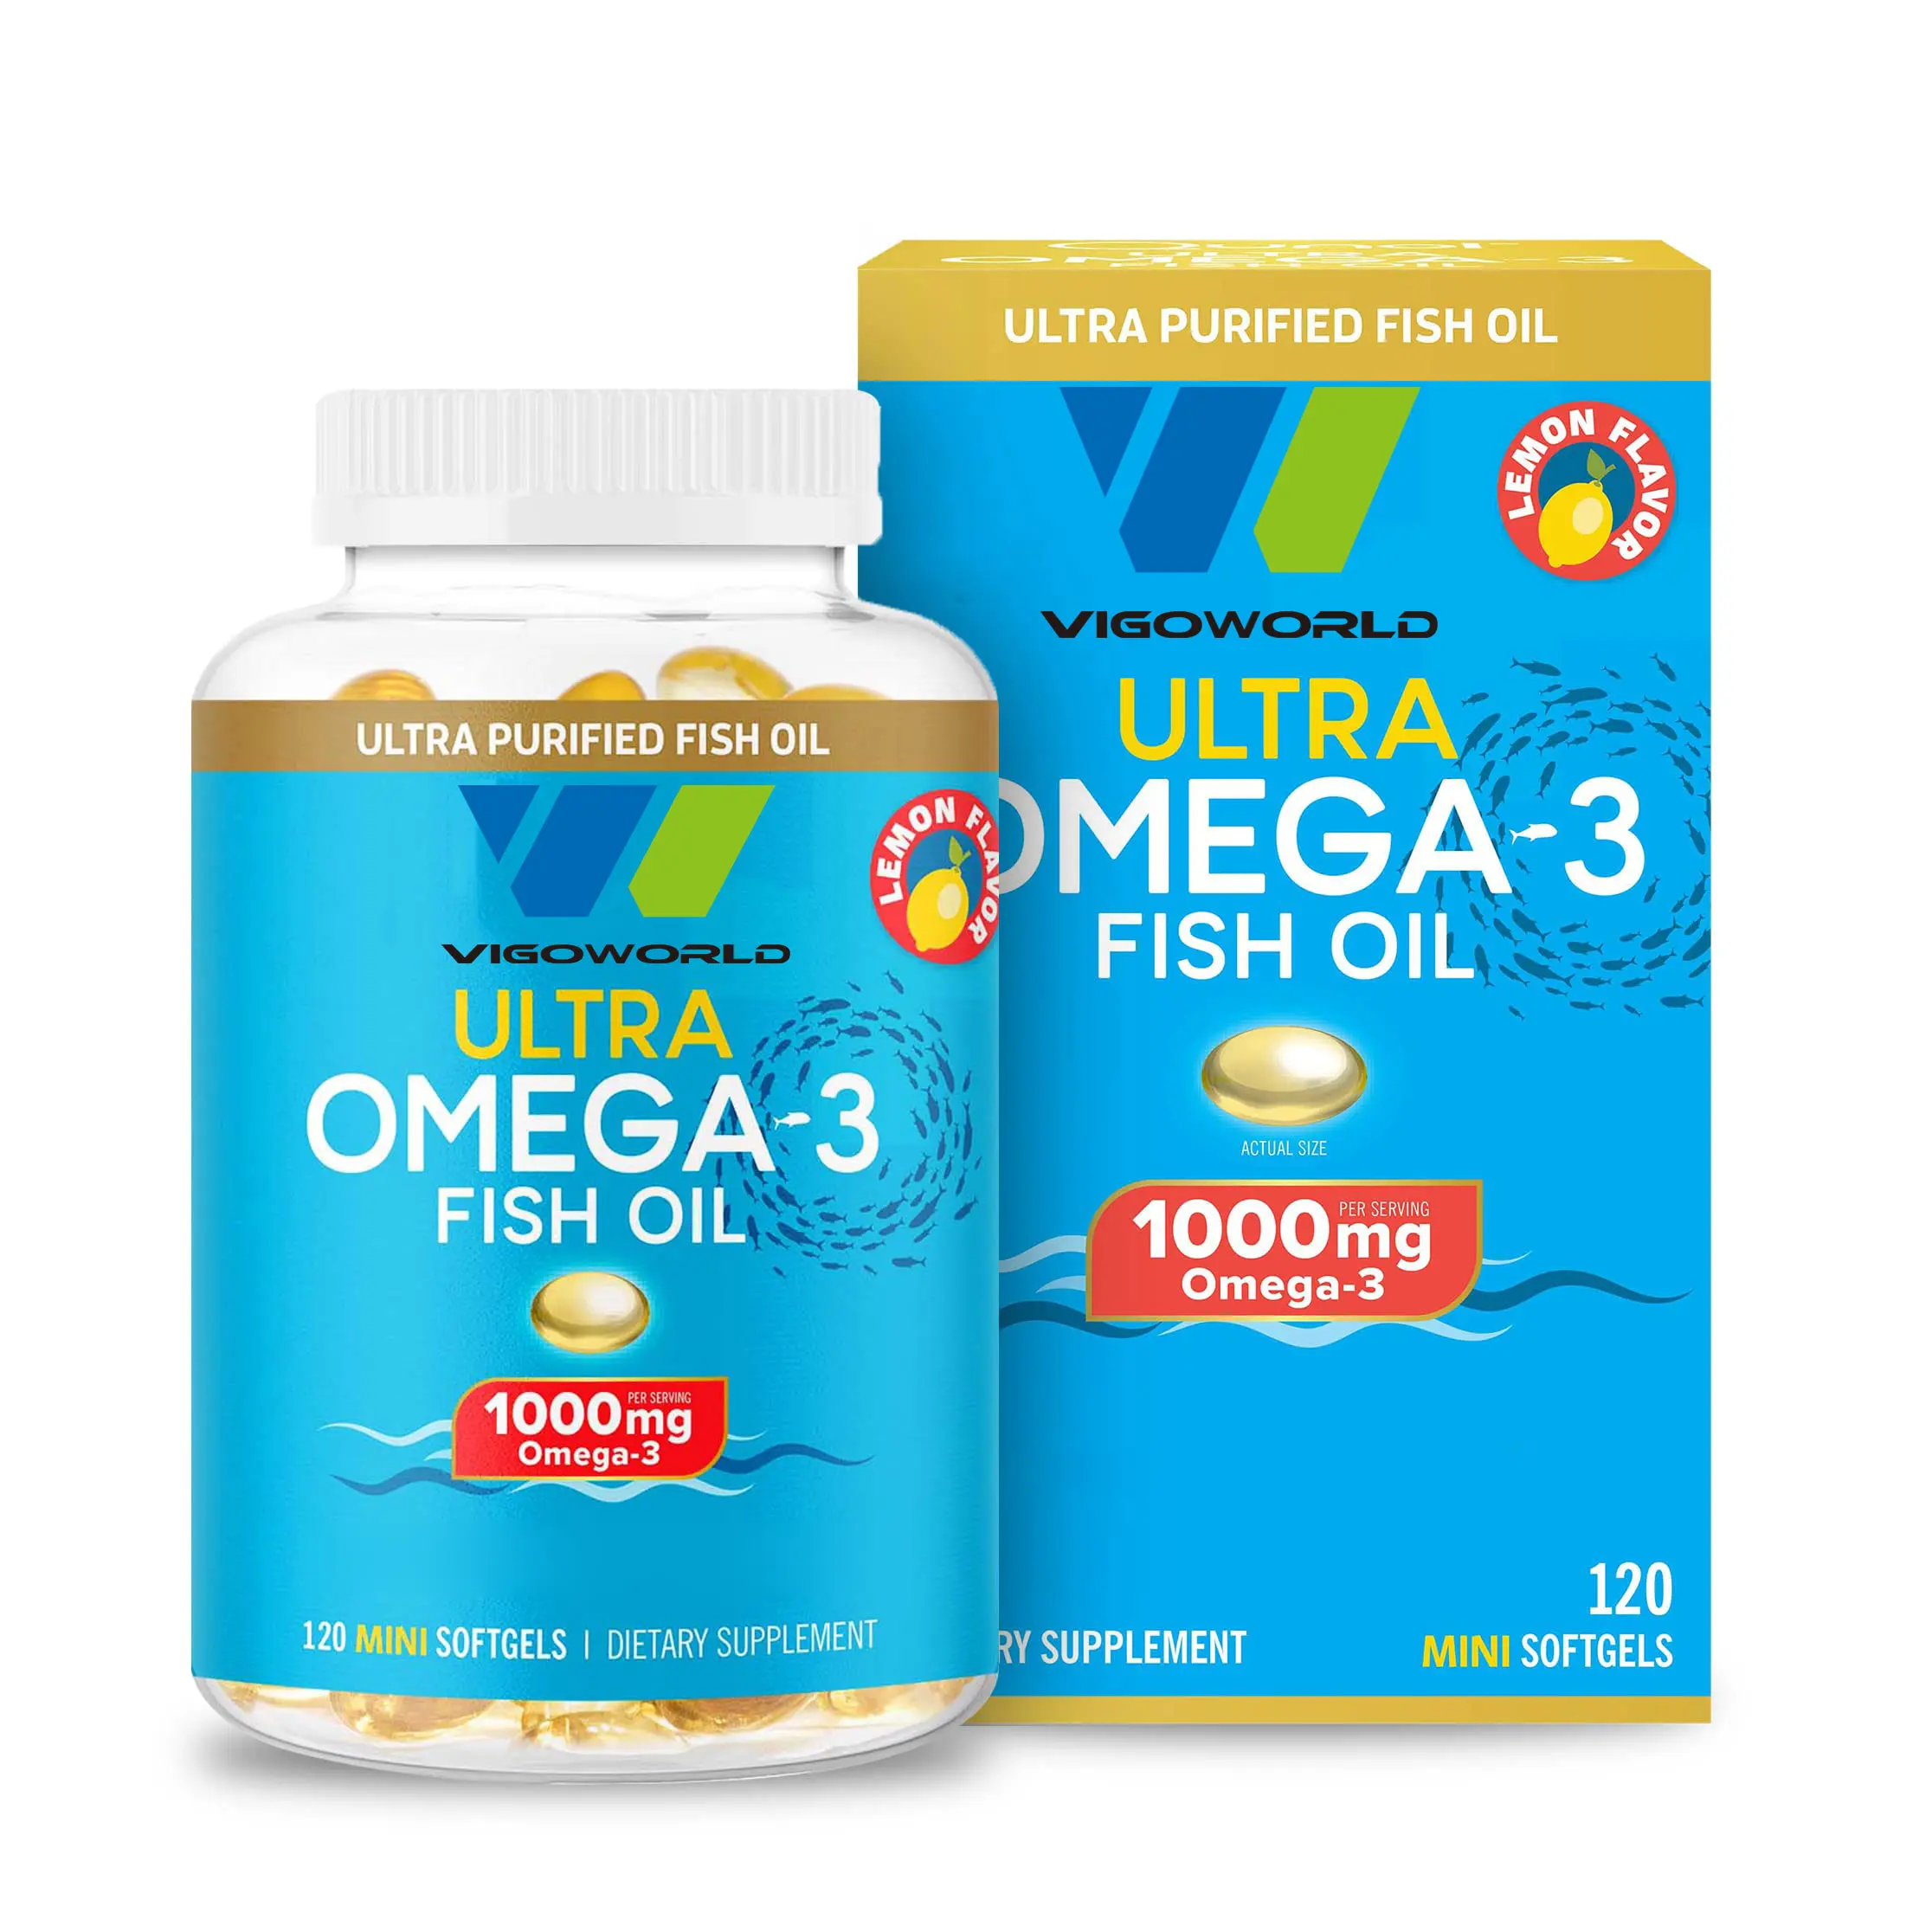 Omega 3 saf balık Mini Softgels desteği Omega3 DHA takviyeleri için yardım destekleyen beyin ve genel sağlık için